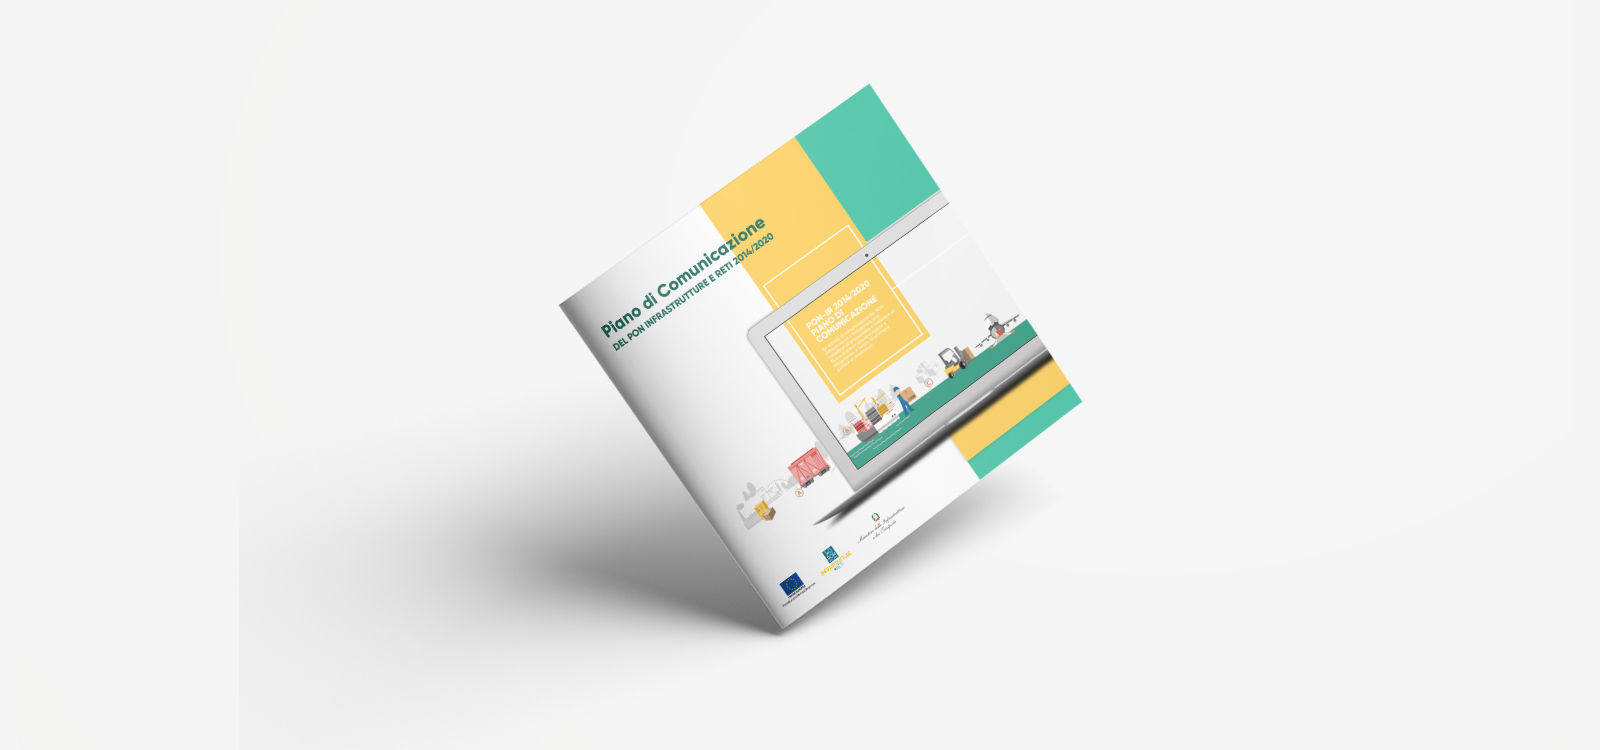 Brochure “Strategia di comunicazione” del PON-IR 2014-2020